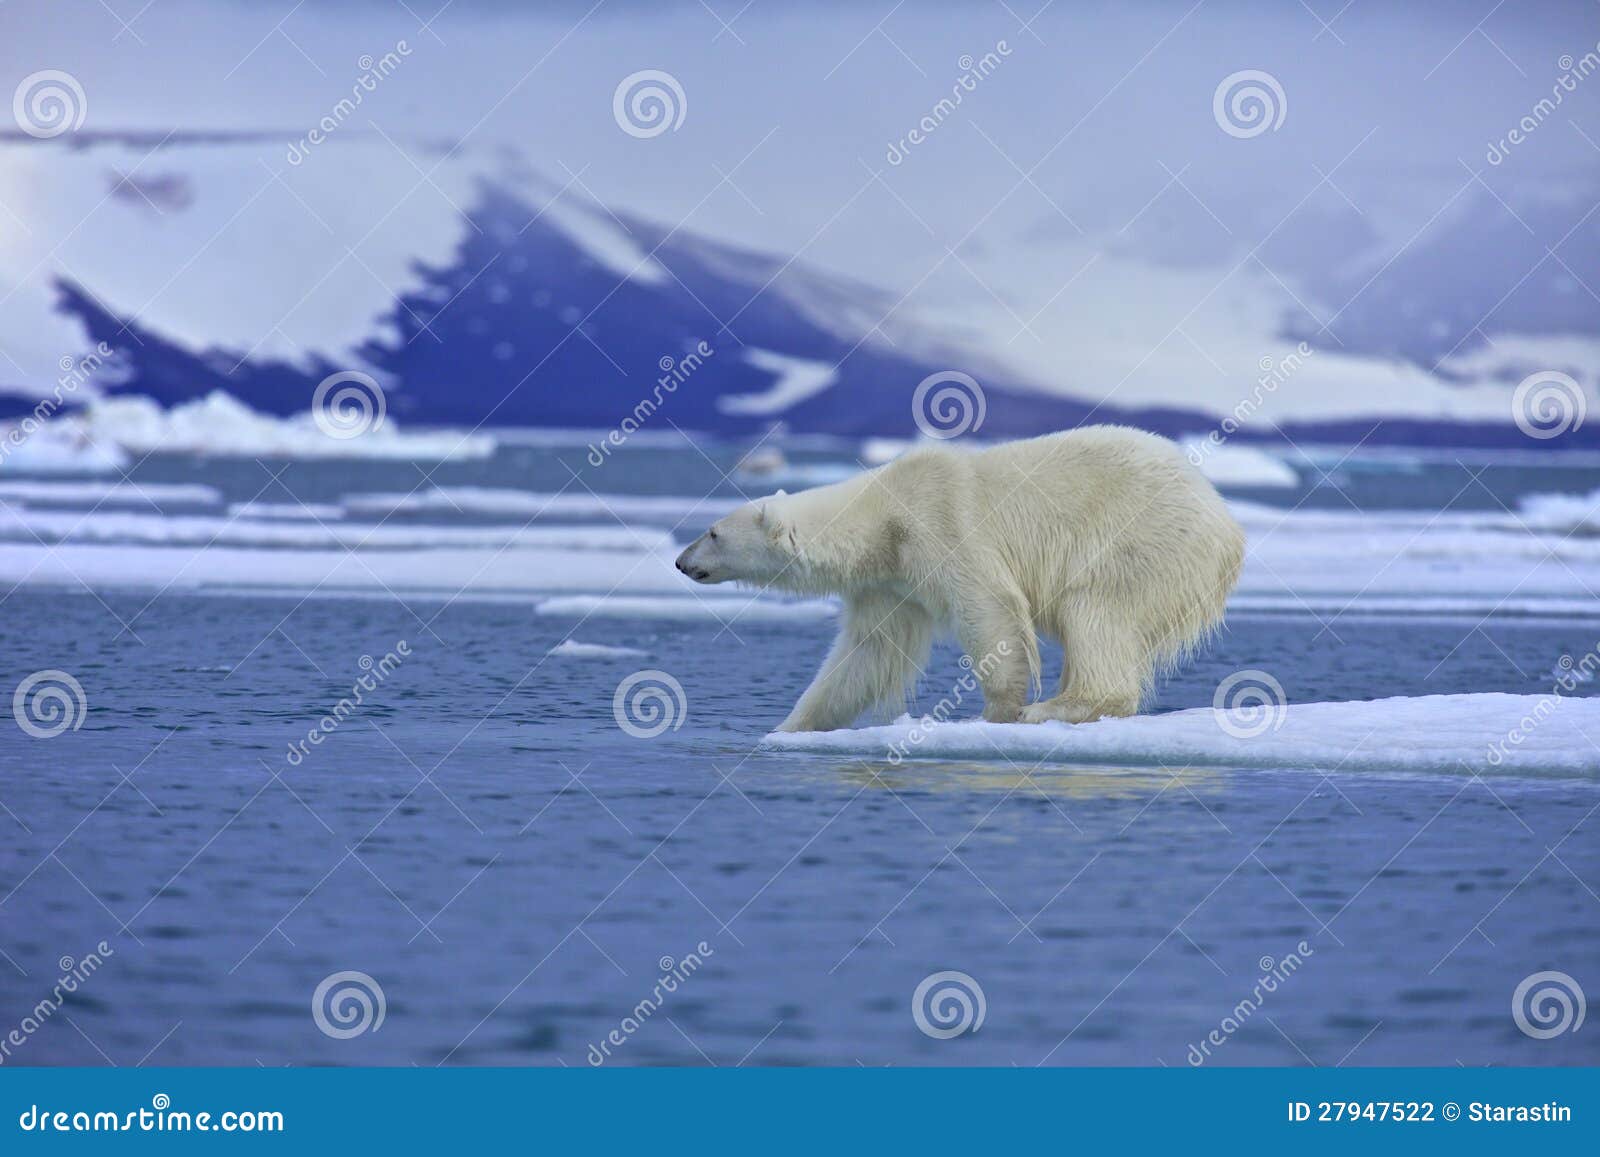 polar bear test water